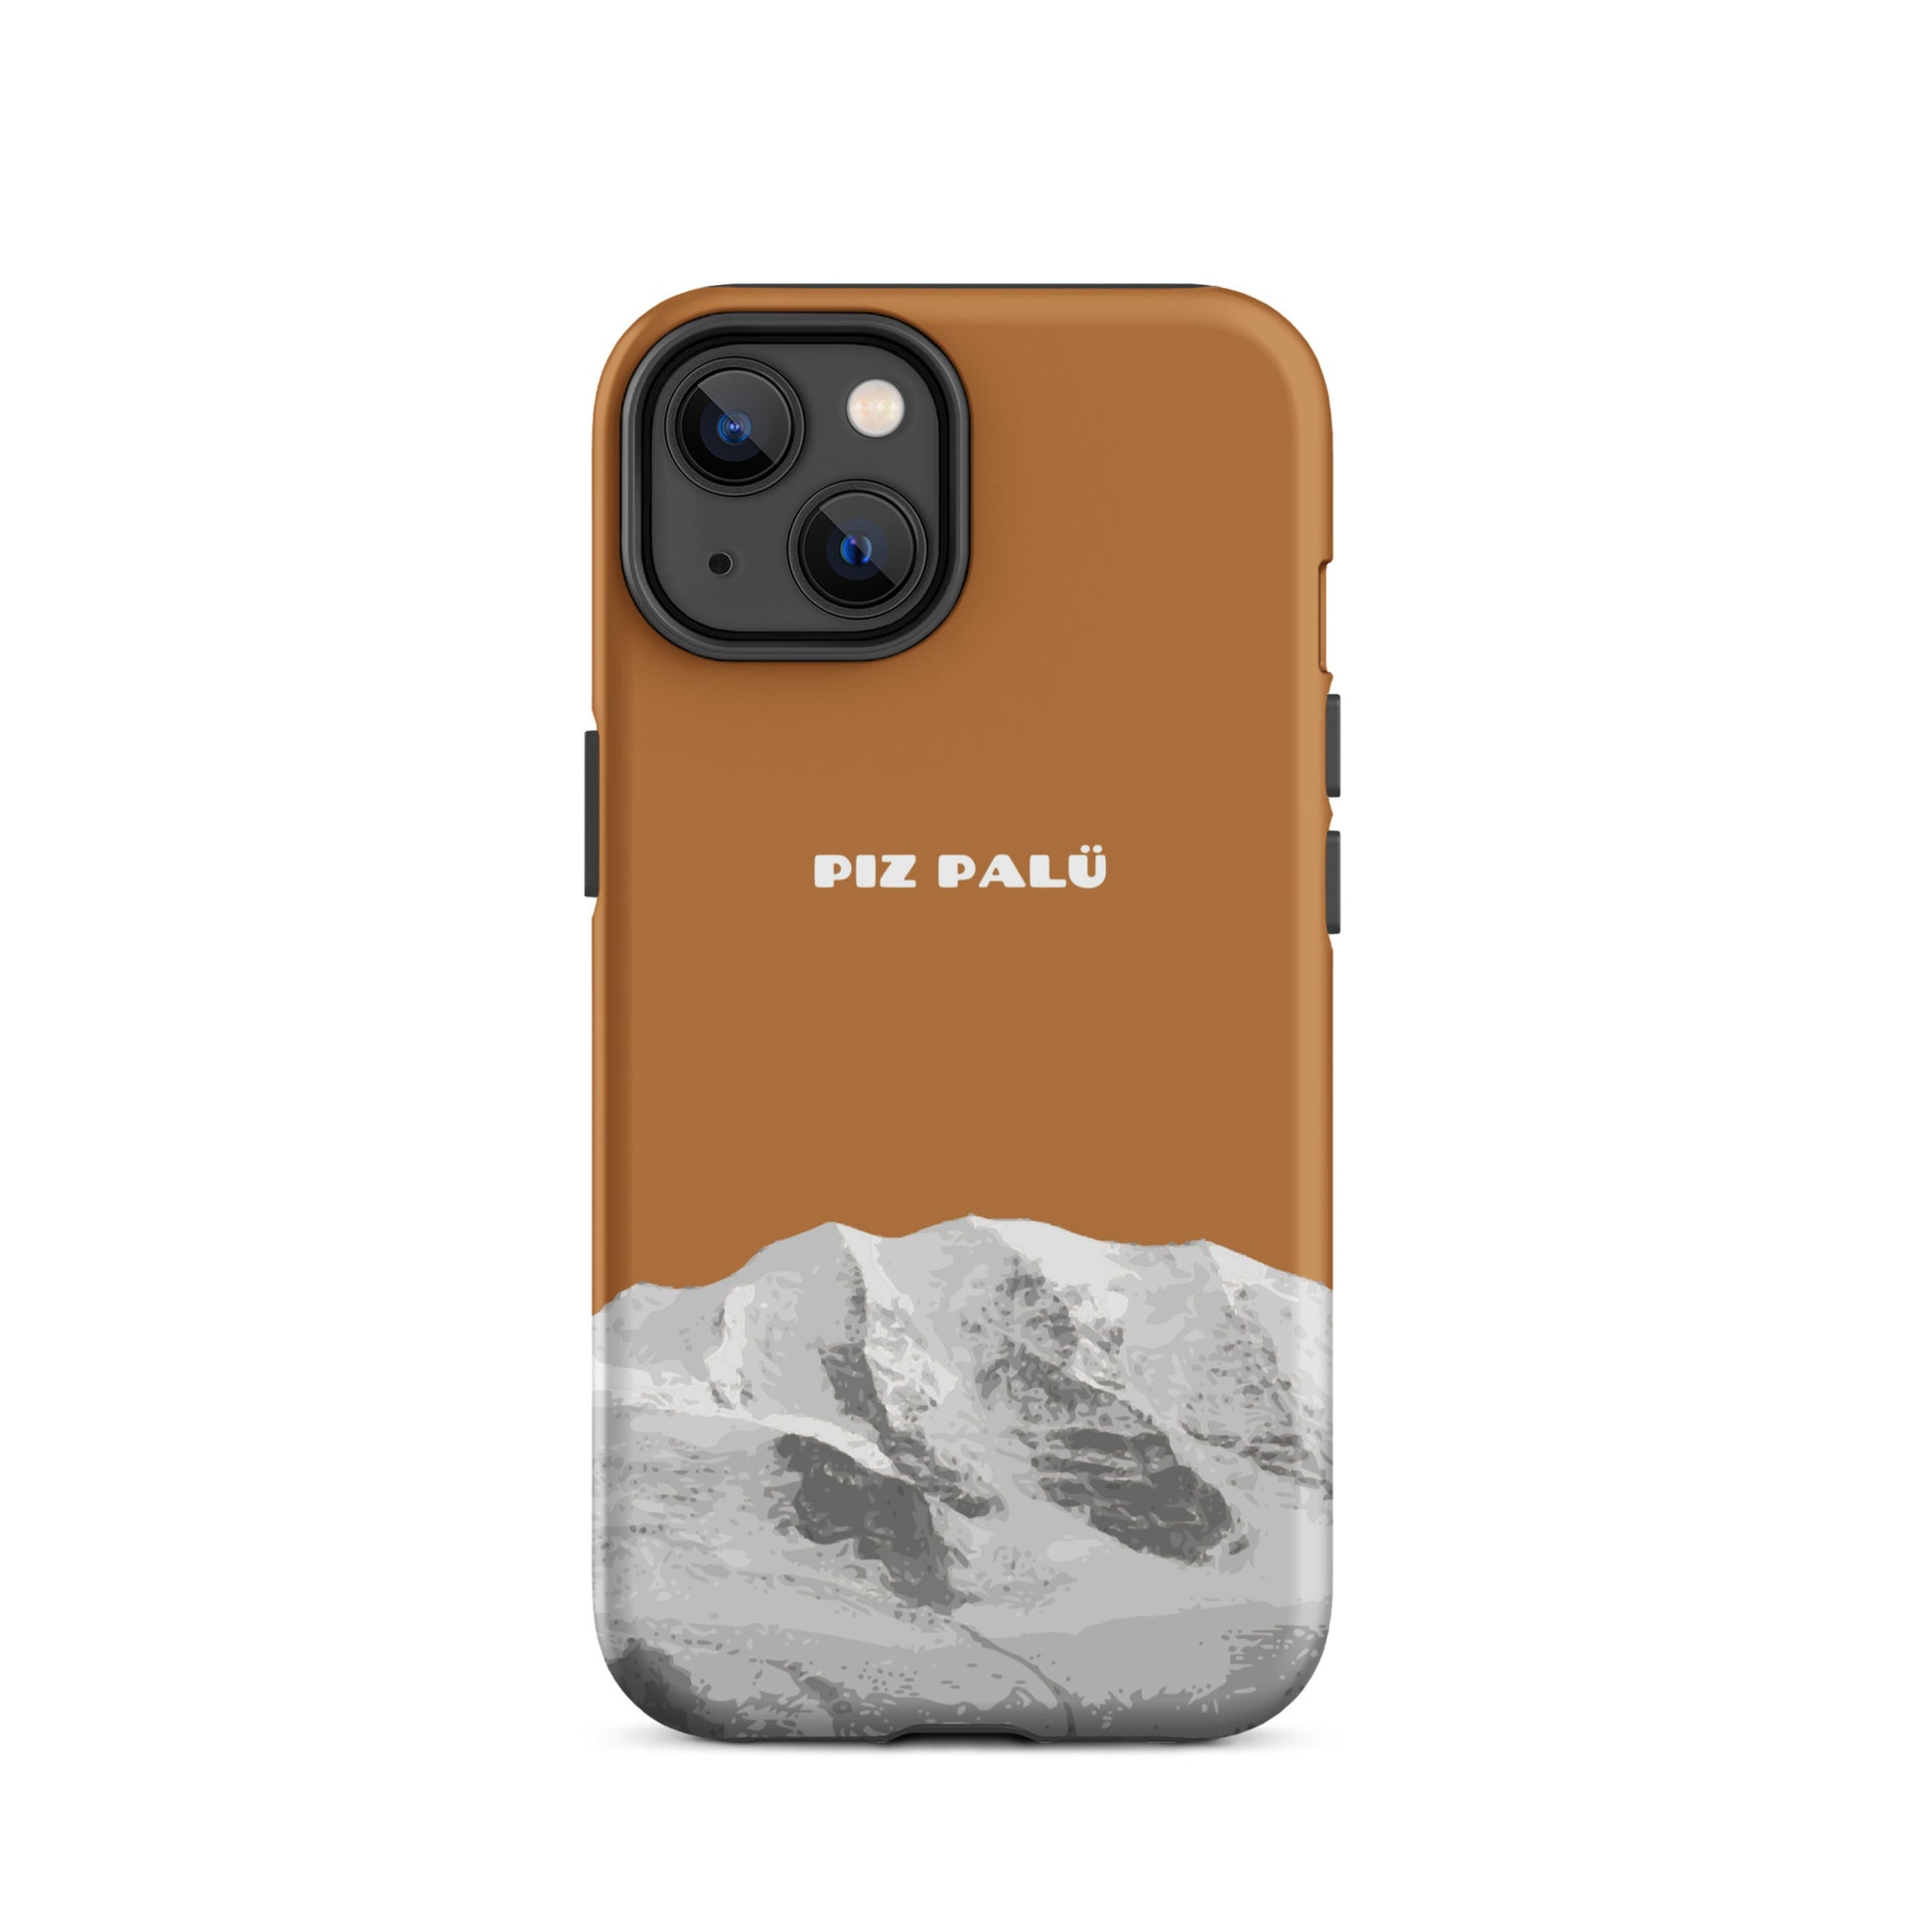 Hülle für das iPhone 14 von Apple in der Farbe Kupfer, dass den Piz Palü in Graubünden zeigt.